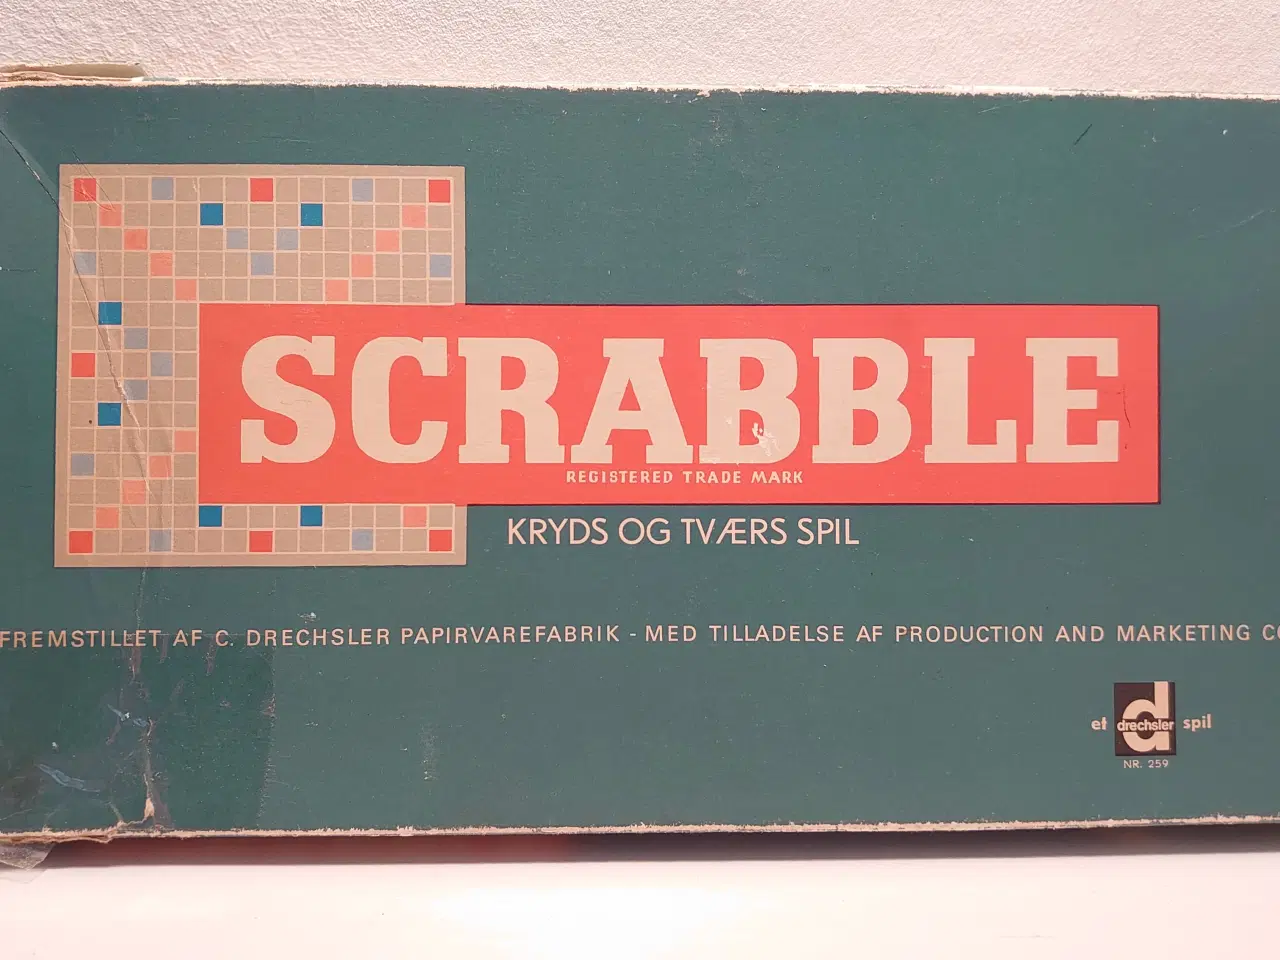 Billede 1 - Komplet Scrabble ca. 1970. Drechsler nr 259.